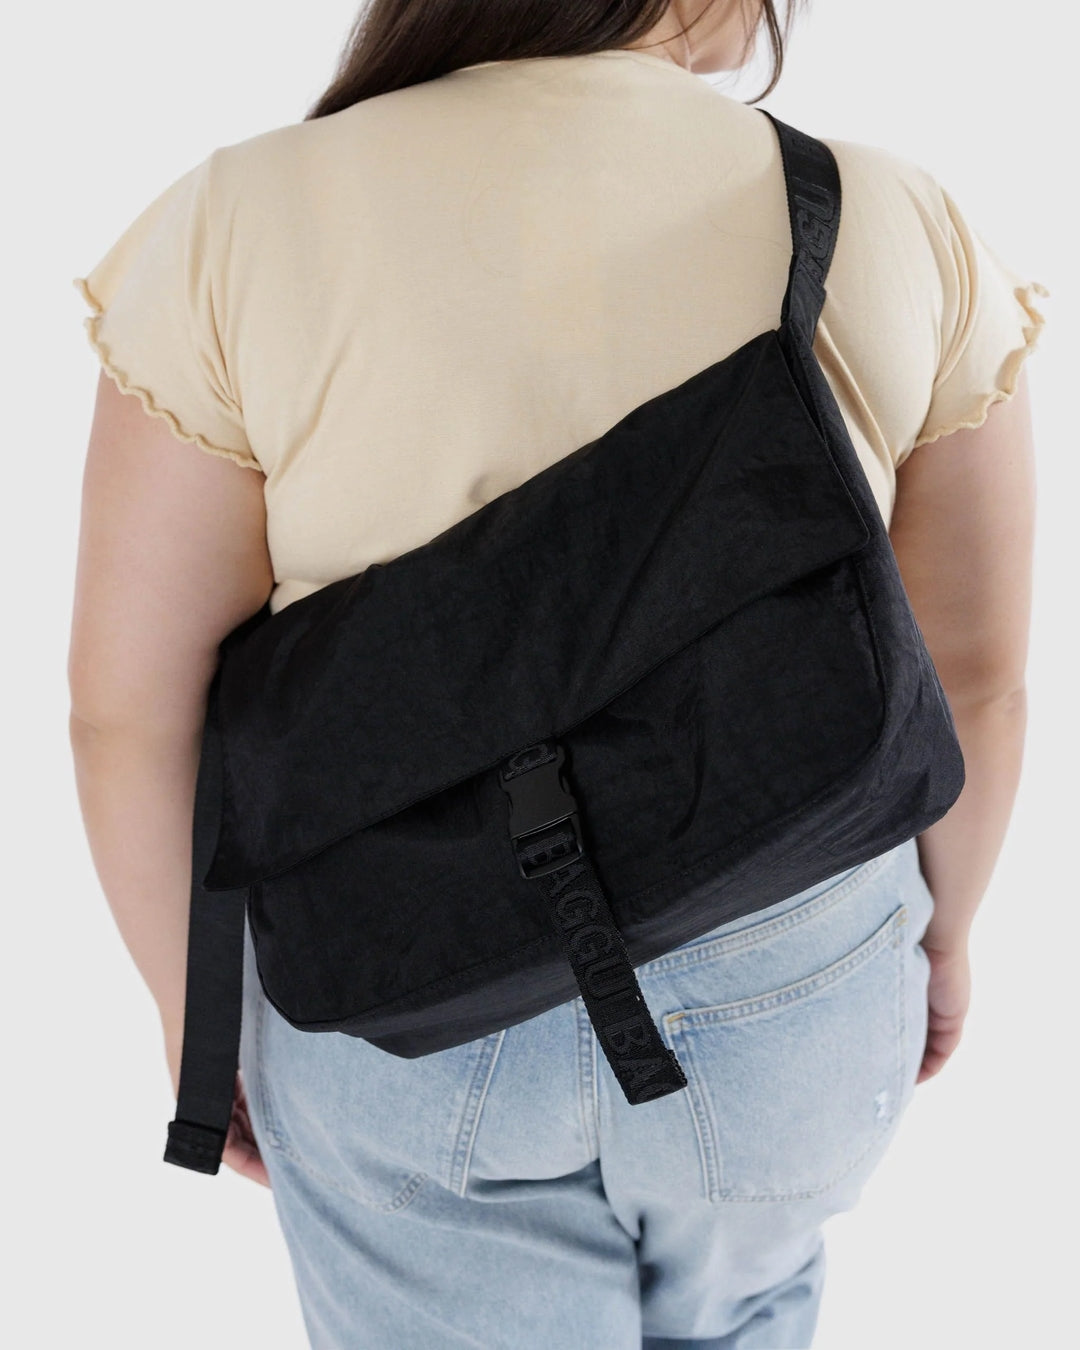 Nylon Messenger Bag - Black [PRE ORDER]